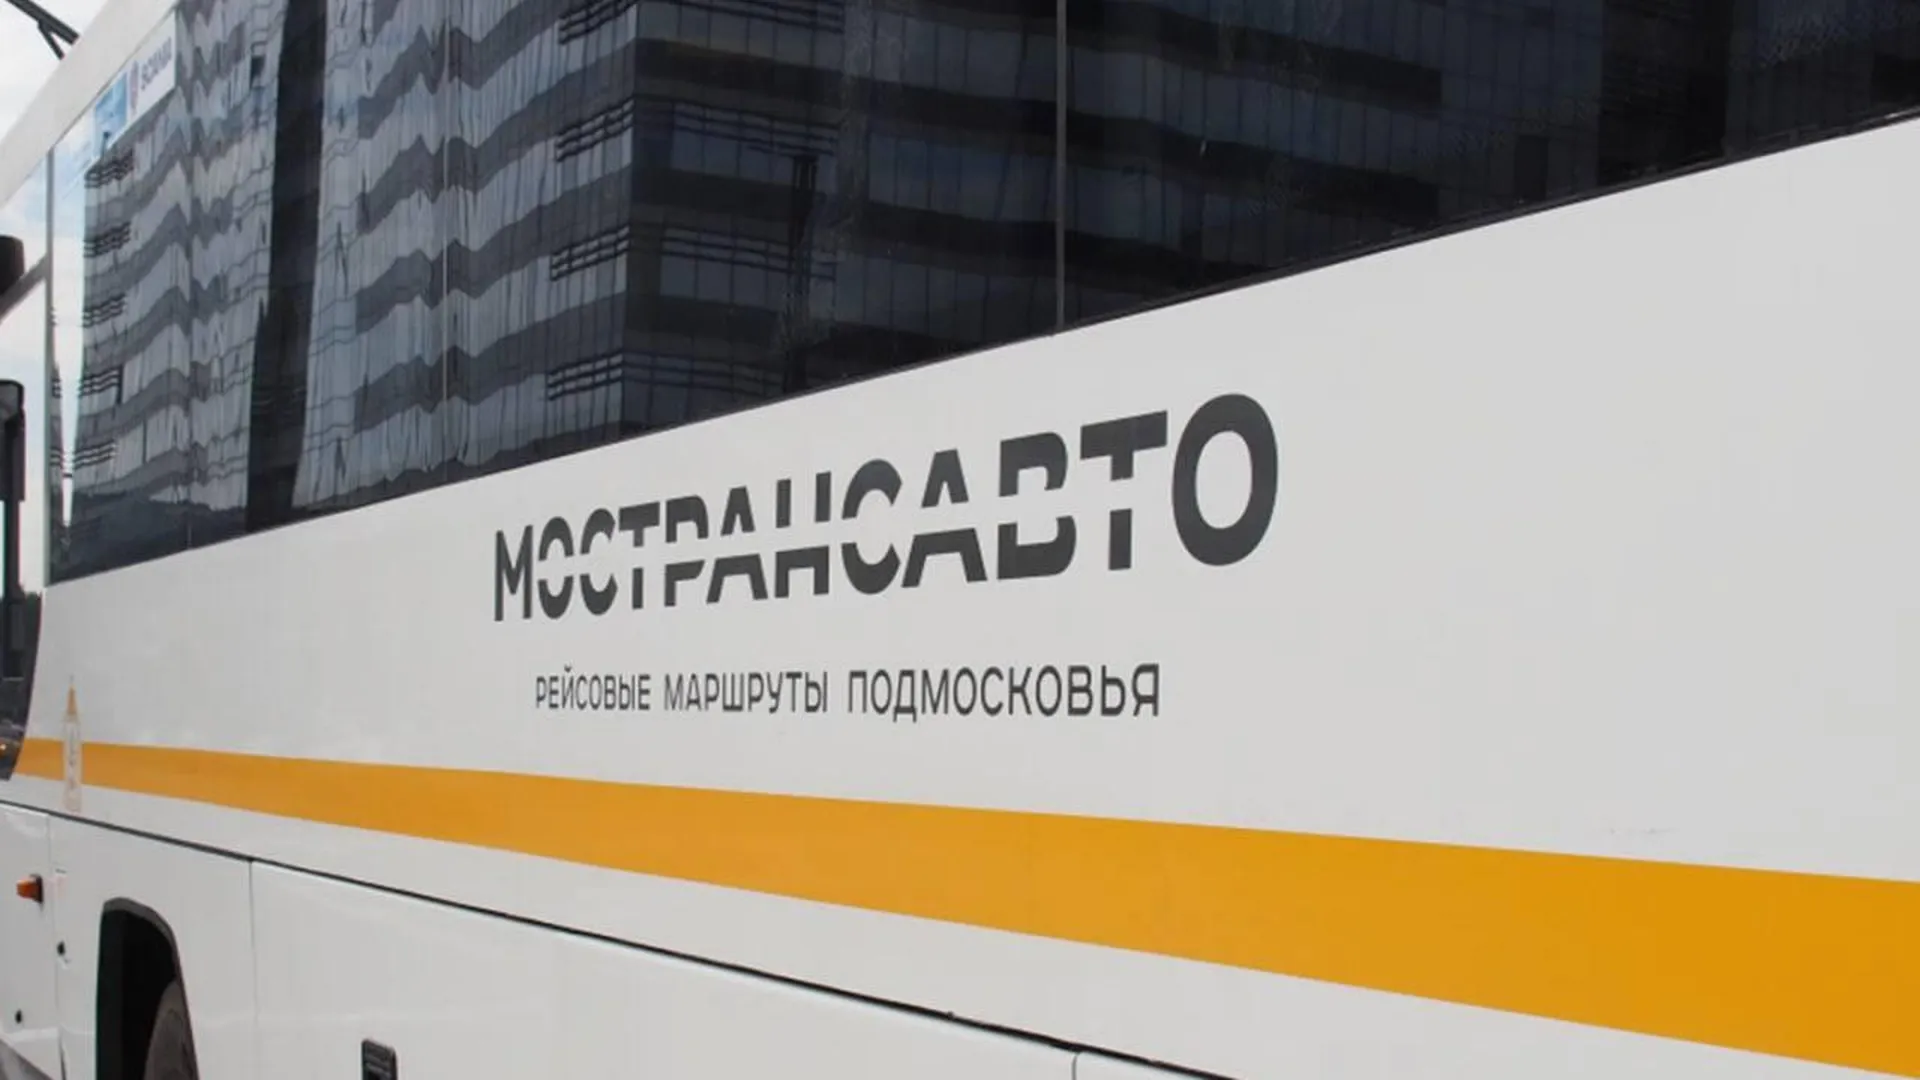 Жителям Подмосковья напомнили правила перевозки домашних животных в автобусах Мострансавто